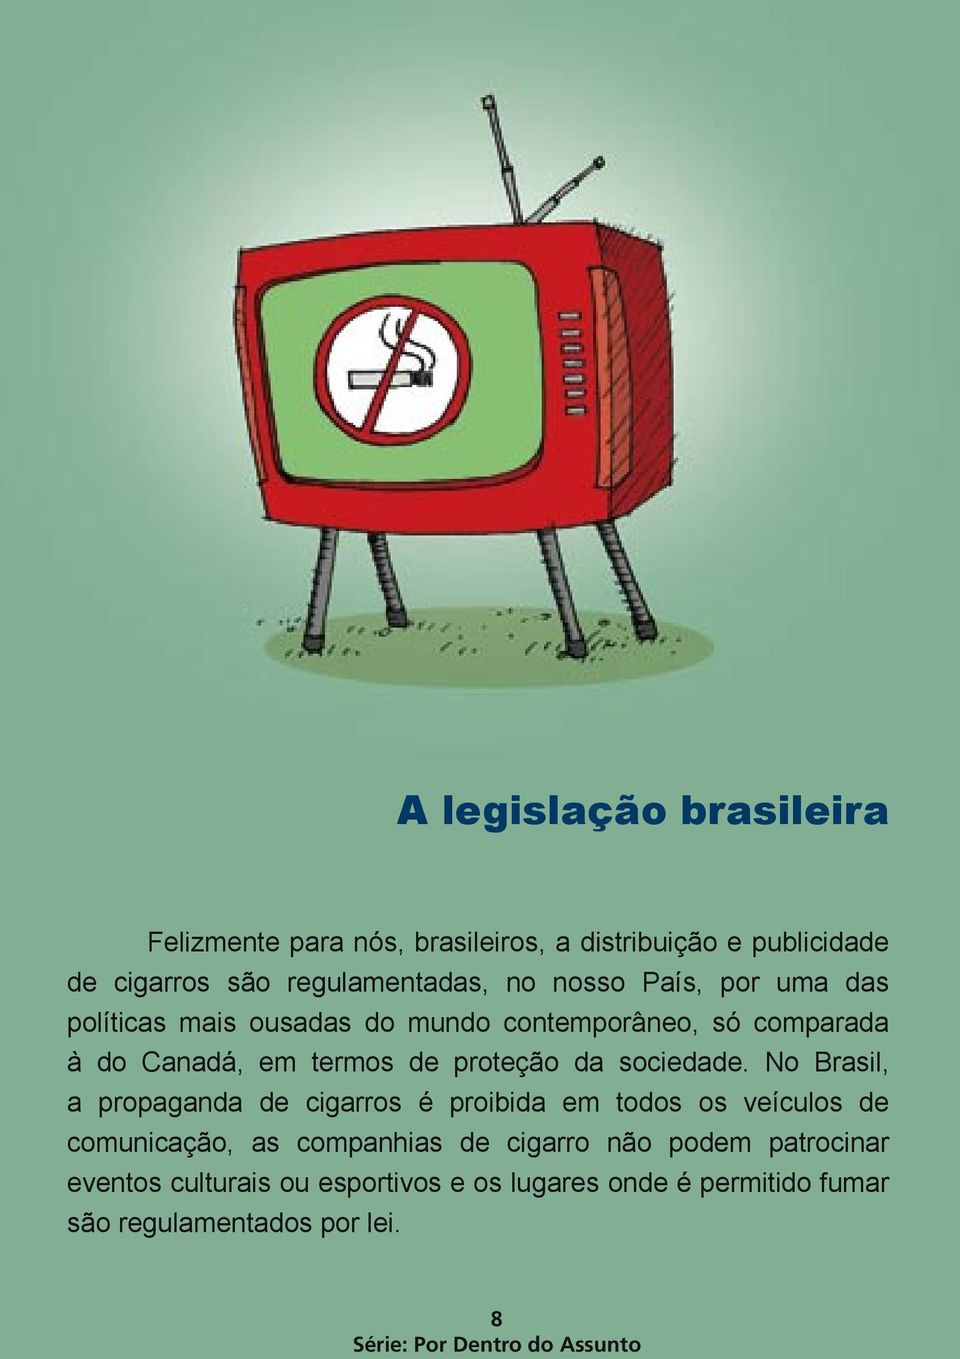 No Brasil, a propaganda de cigarros é proibida em todos os veículos de comunicação, as companhias de cigarro não podem